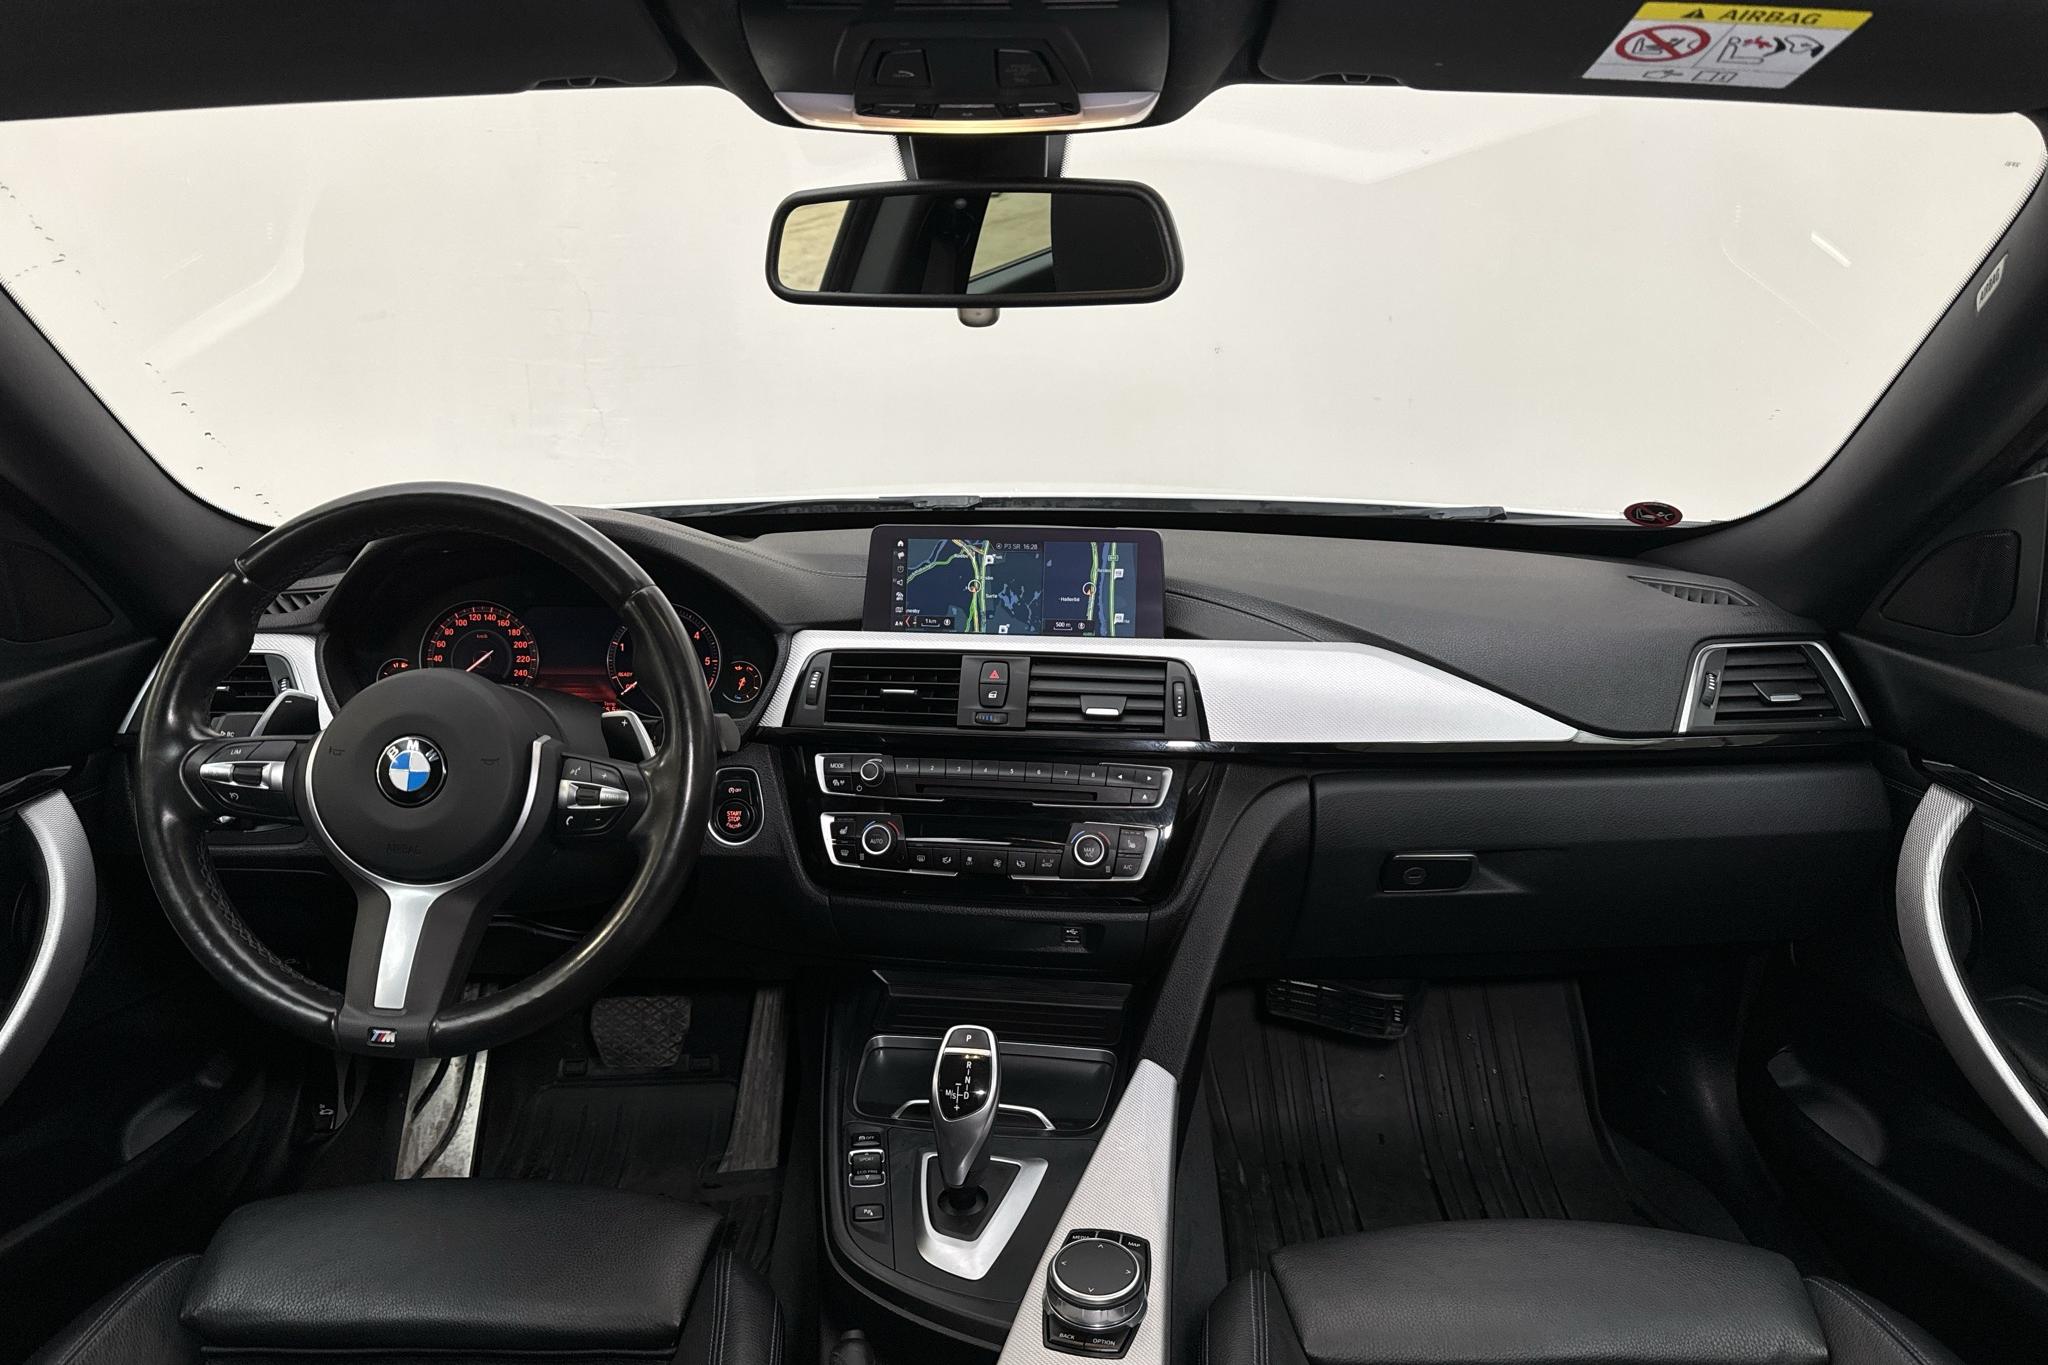 BMW 320d GT xDrive, F34 (190hk) - 76 600 km - Automaatne - valge - 2019